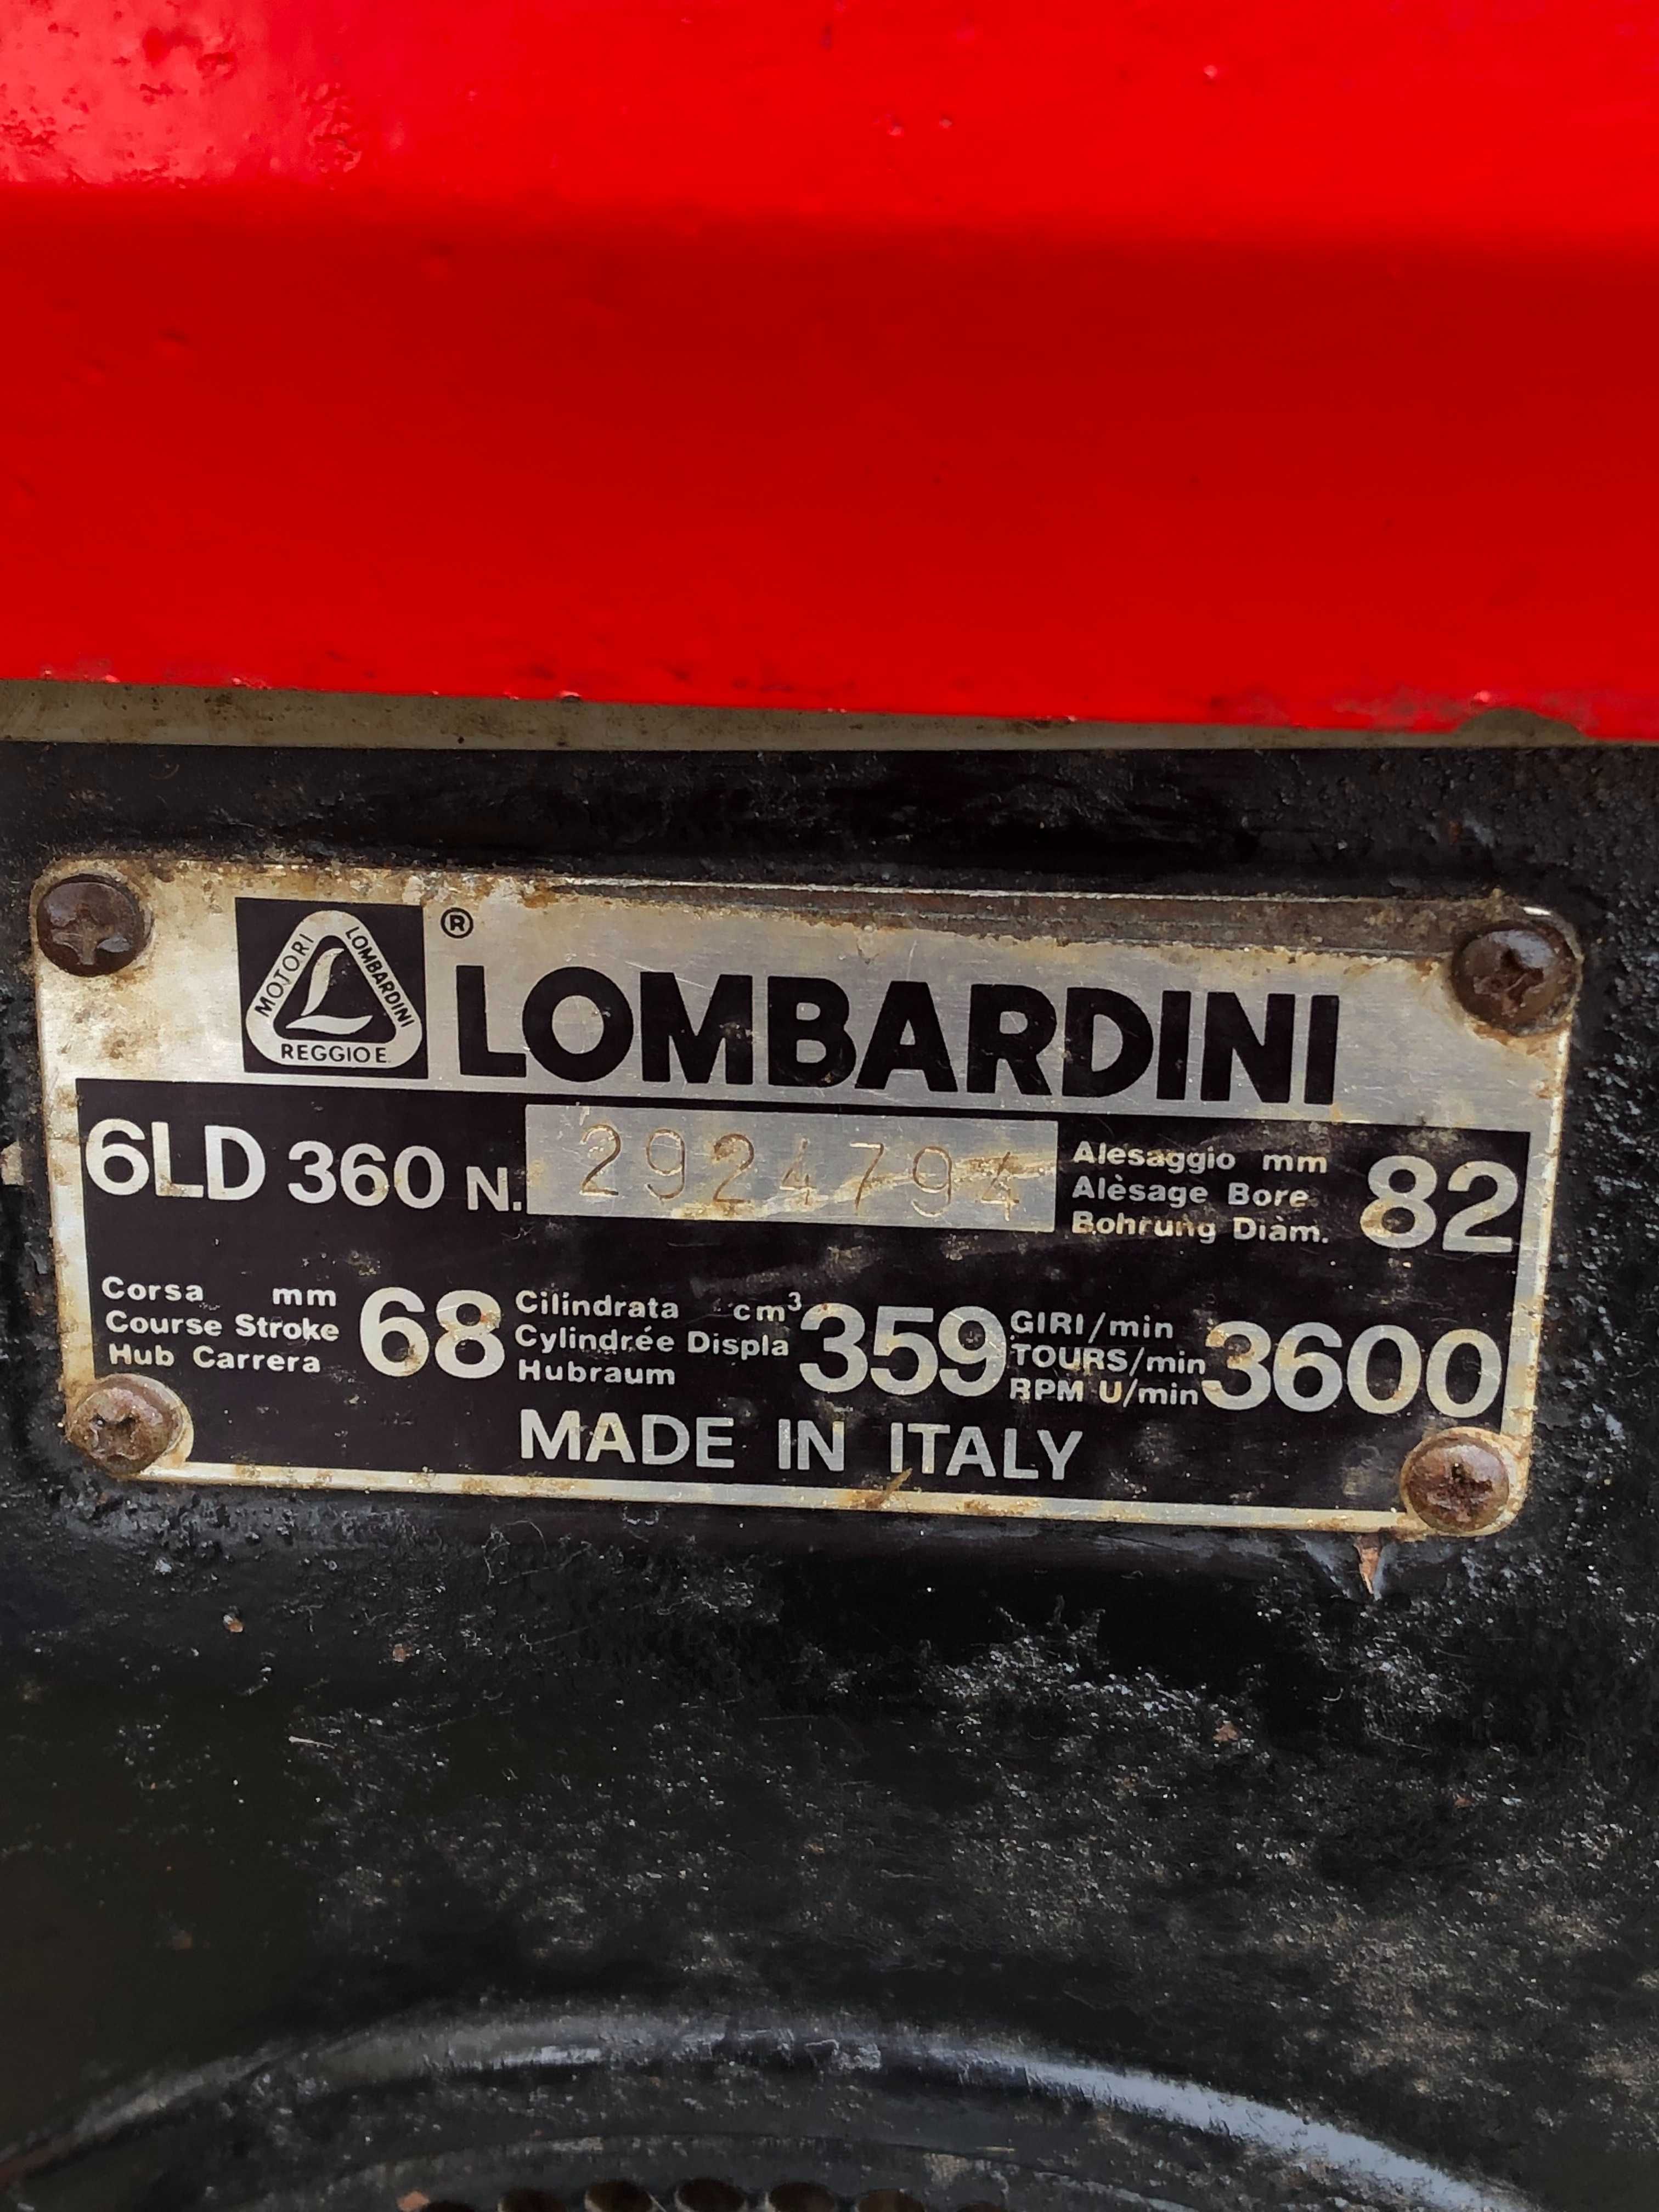 Lombardini Forte